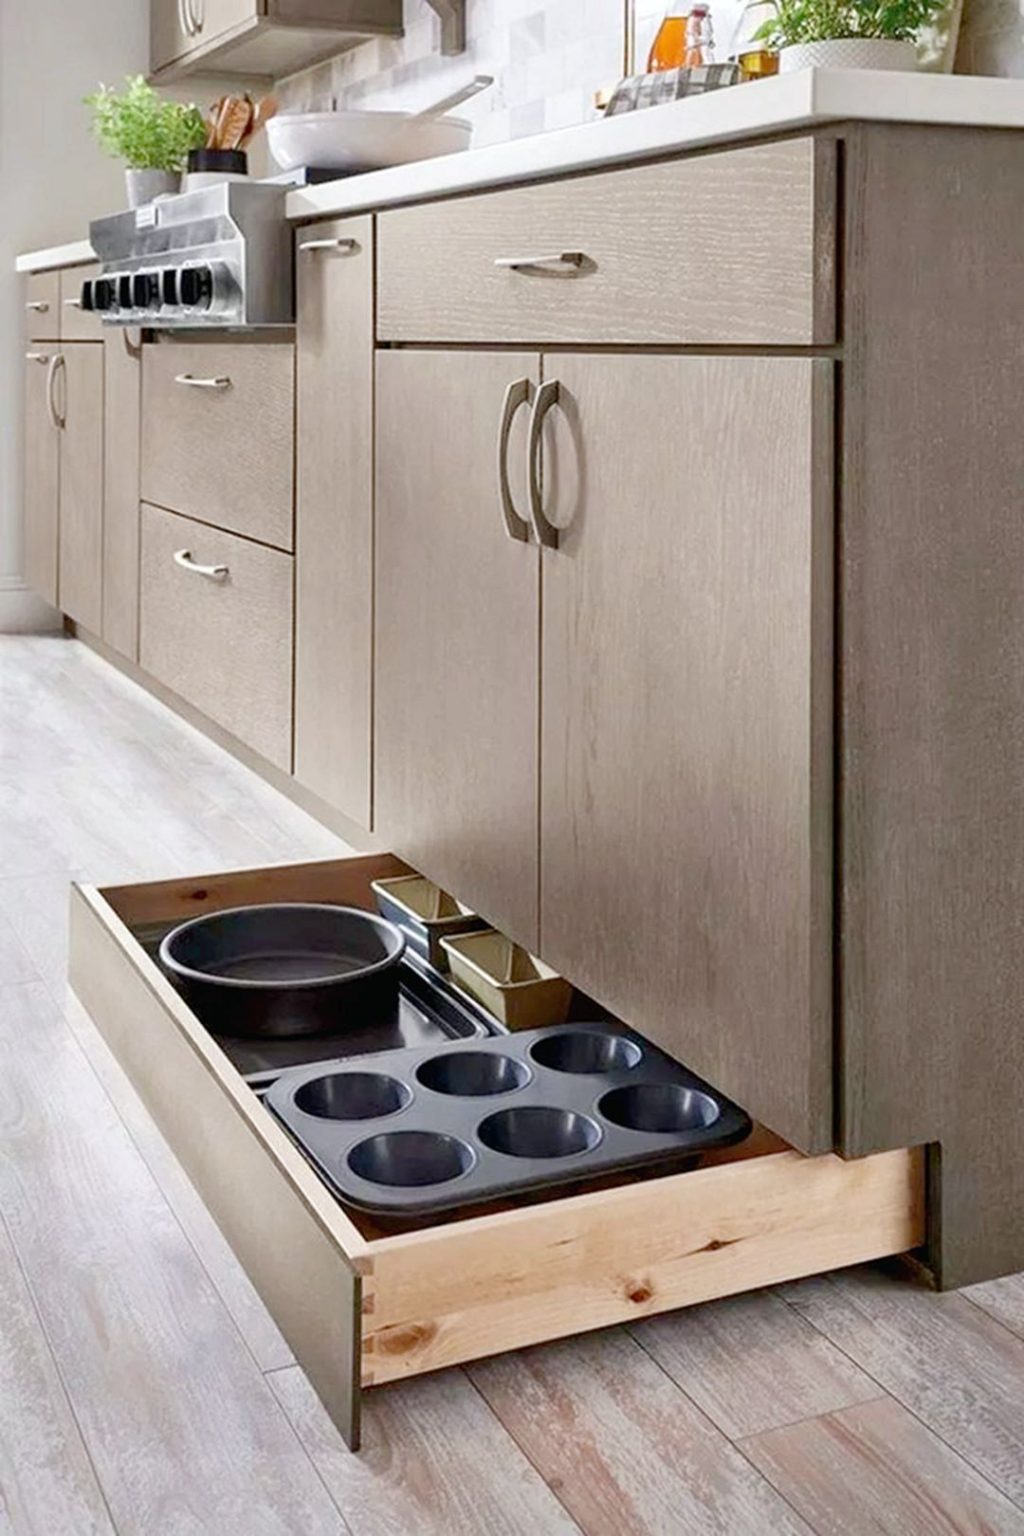 Smart Kitchen Hidden Cabinet Organization